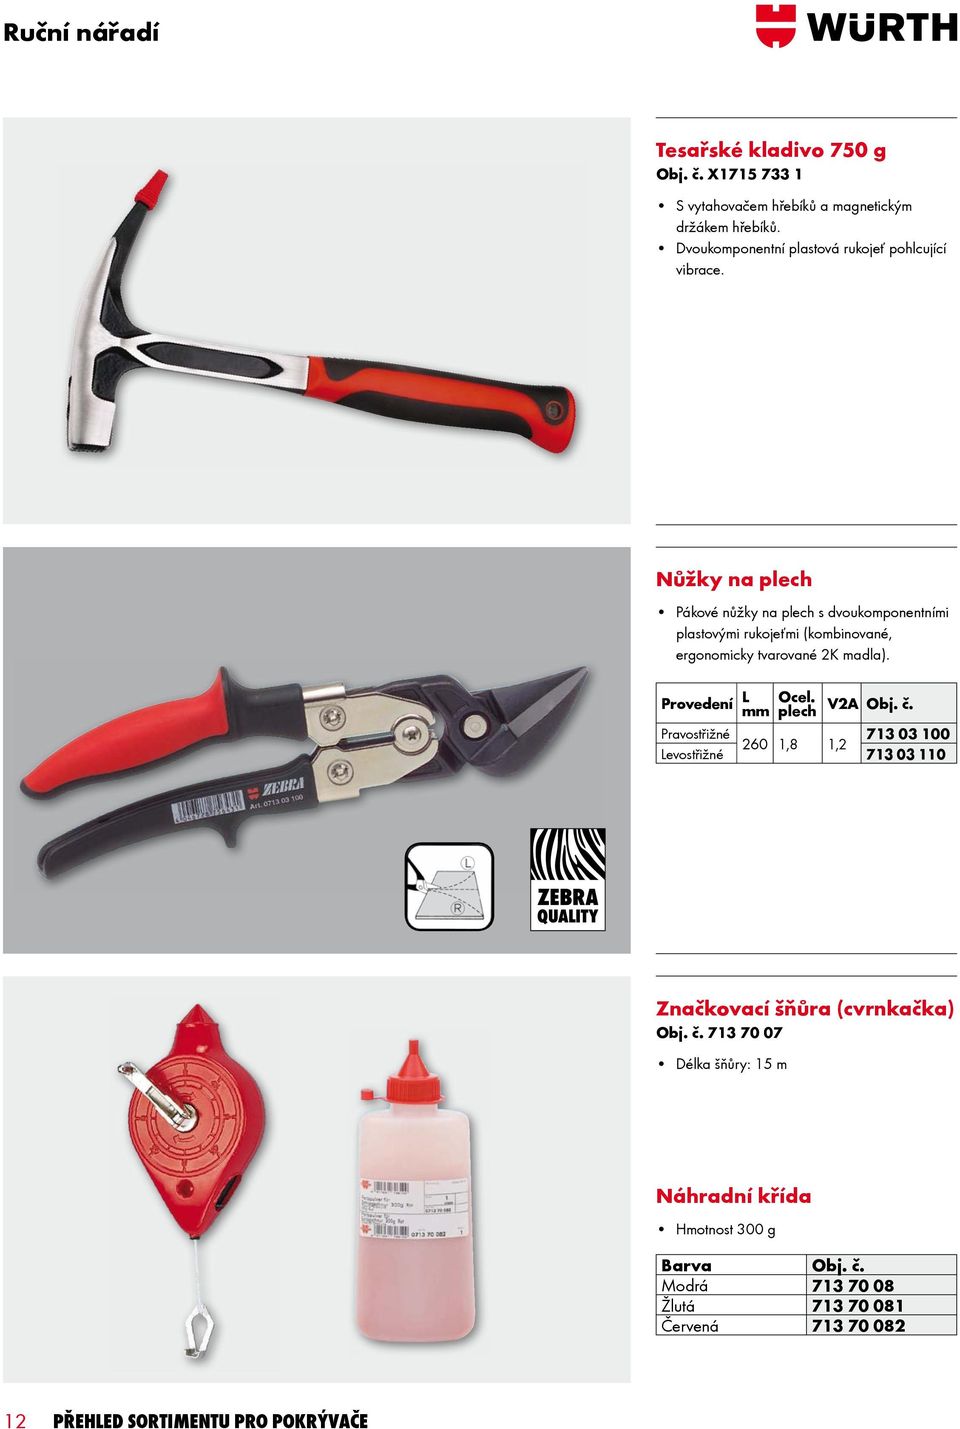 Nůžky na plech Pákové nůžky na plech s dvoukomponentními plastovými rukojeťmi (kombinované, ergonomicky tvarované 2K madla). Provedení L Ocel.